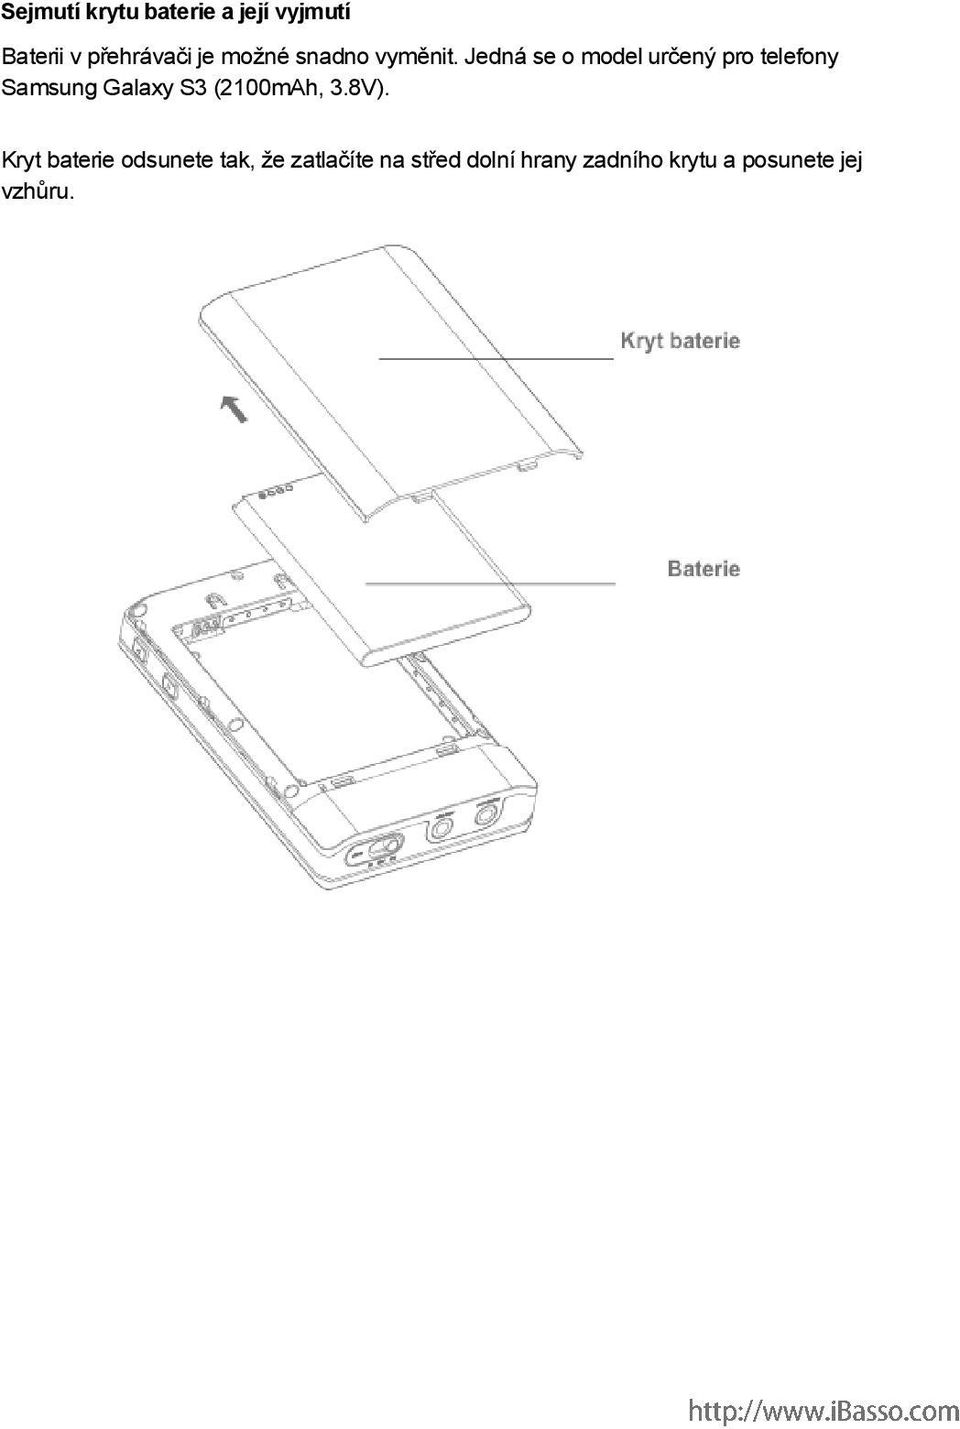 Jedná se o model určený pro telefony Samsung Galaxy S3